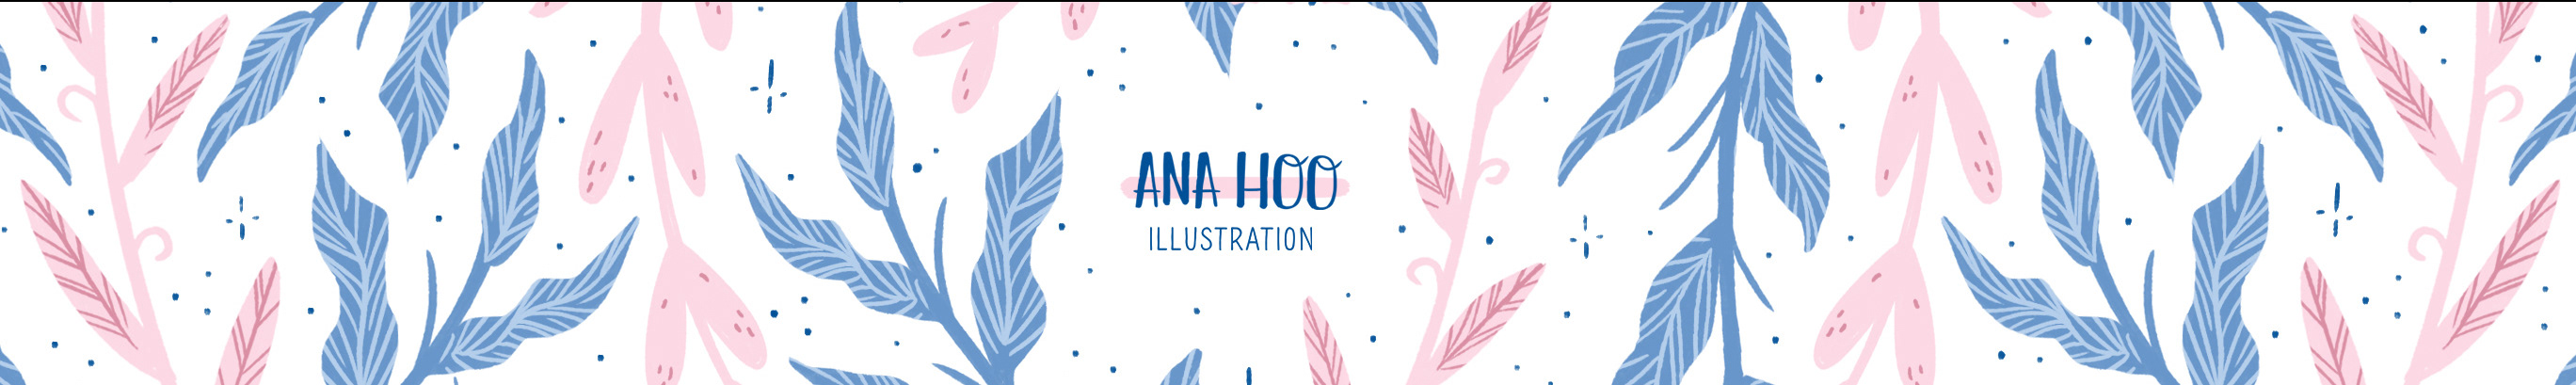 Profil-Banner von ANA HOO